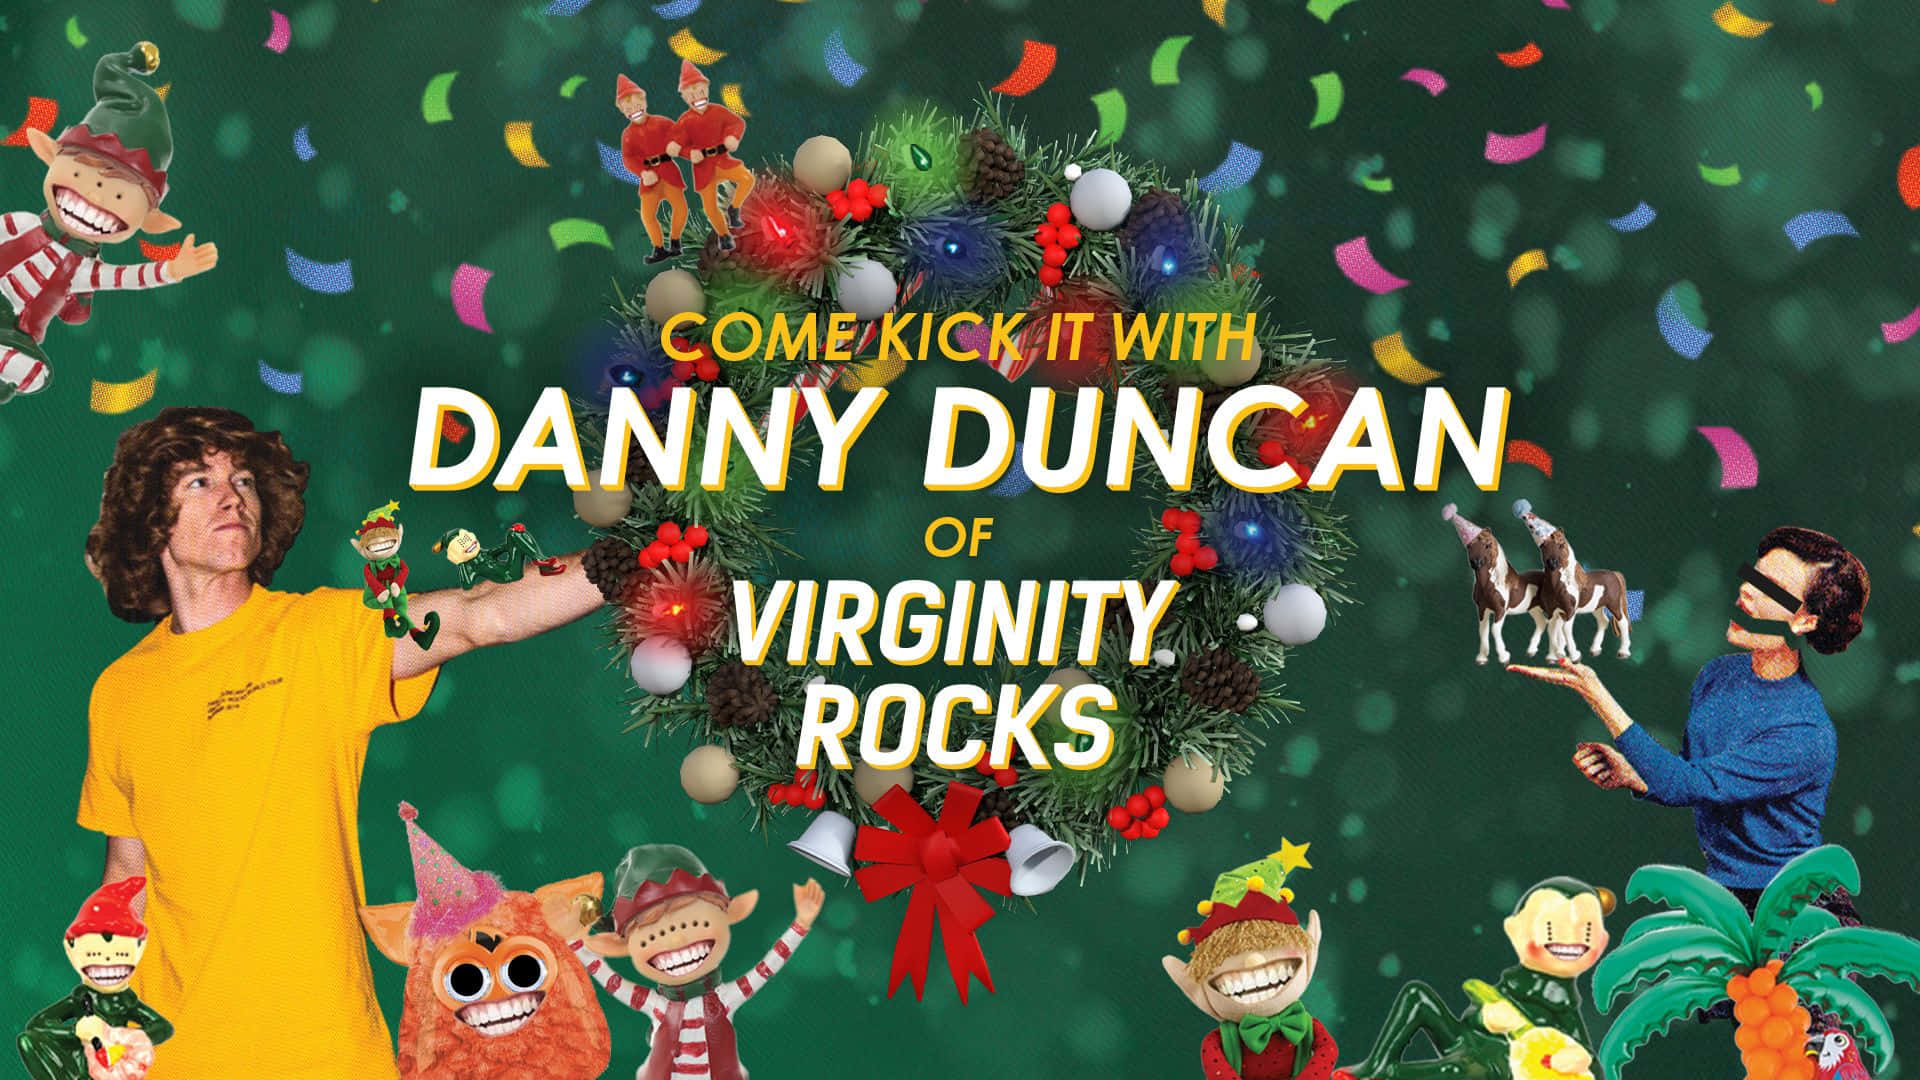 Danny Duncan Virginity Rocks Wallpaper